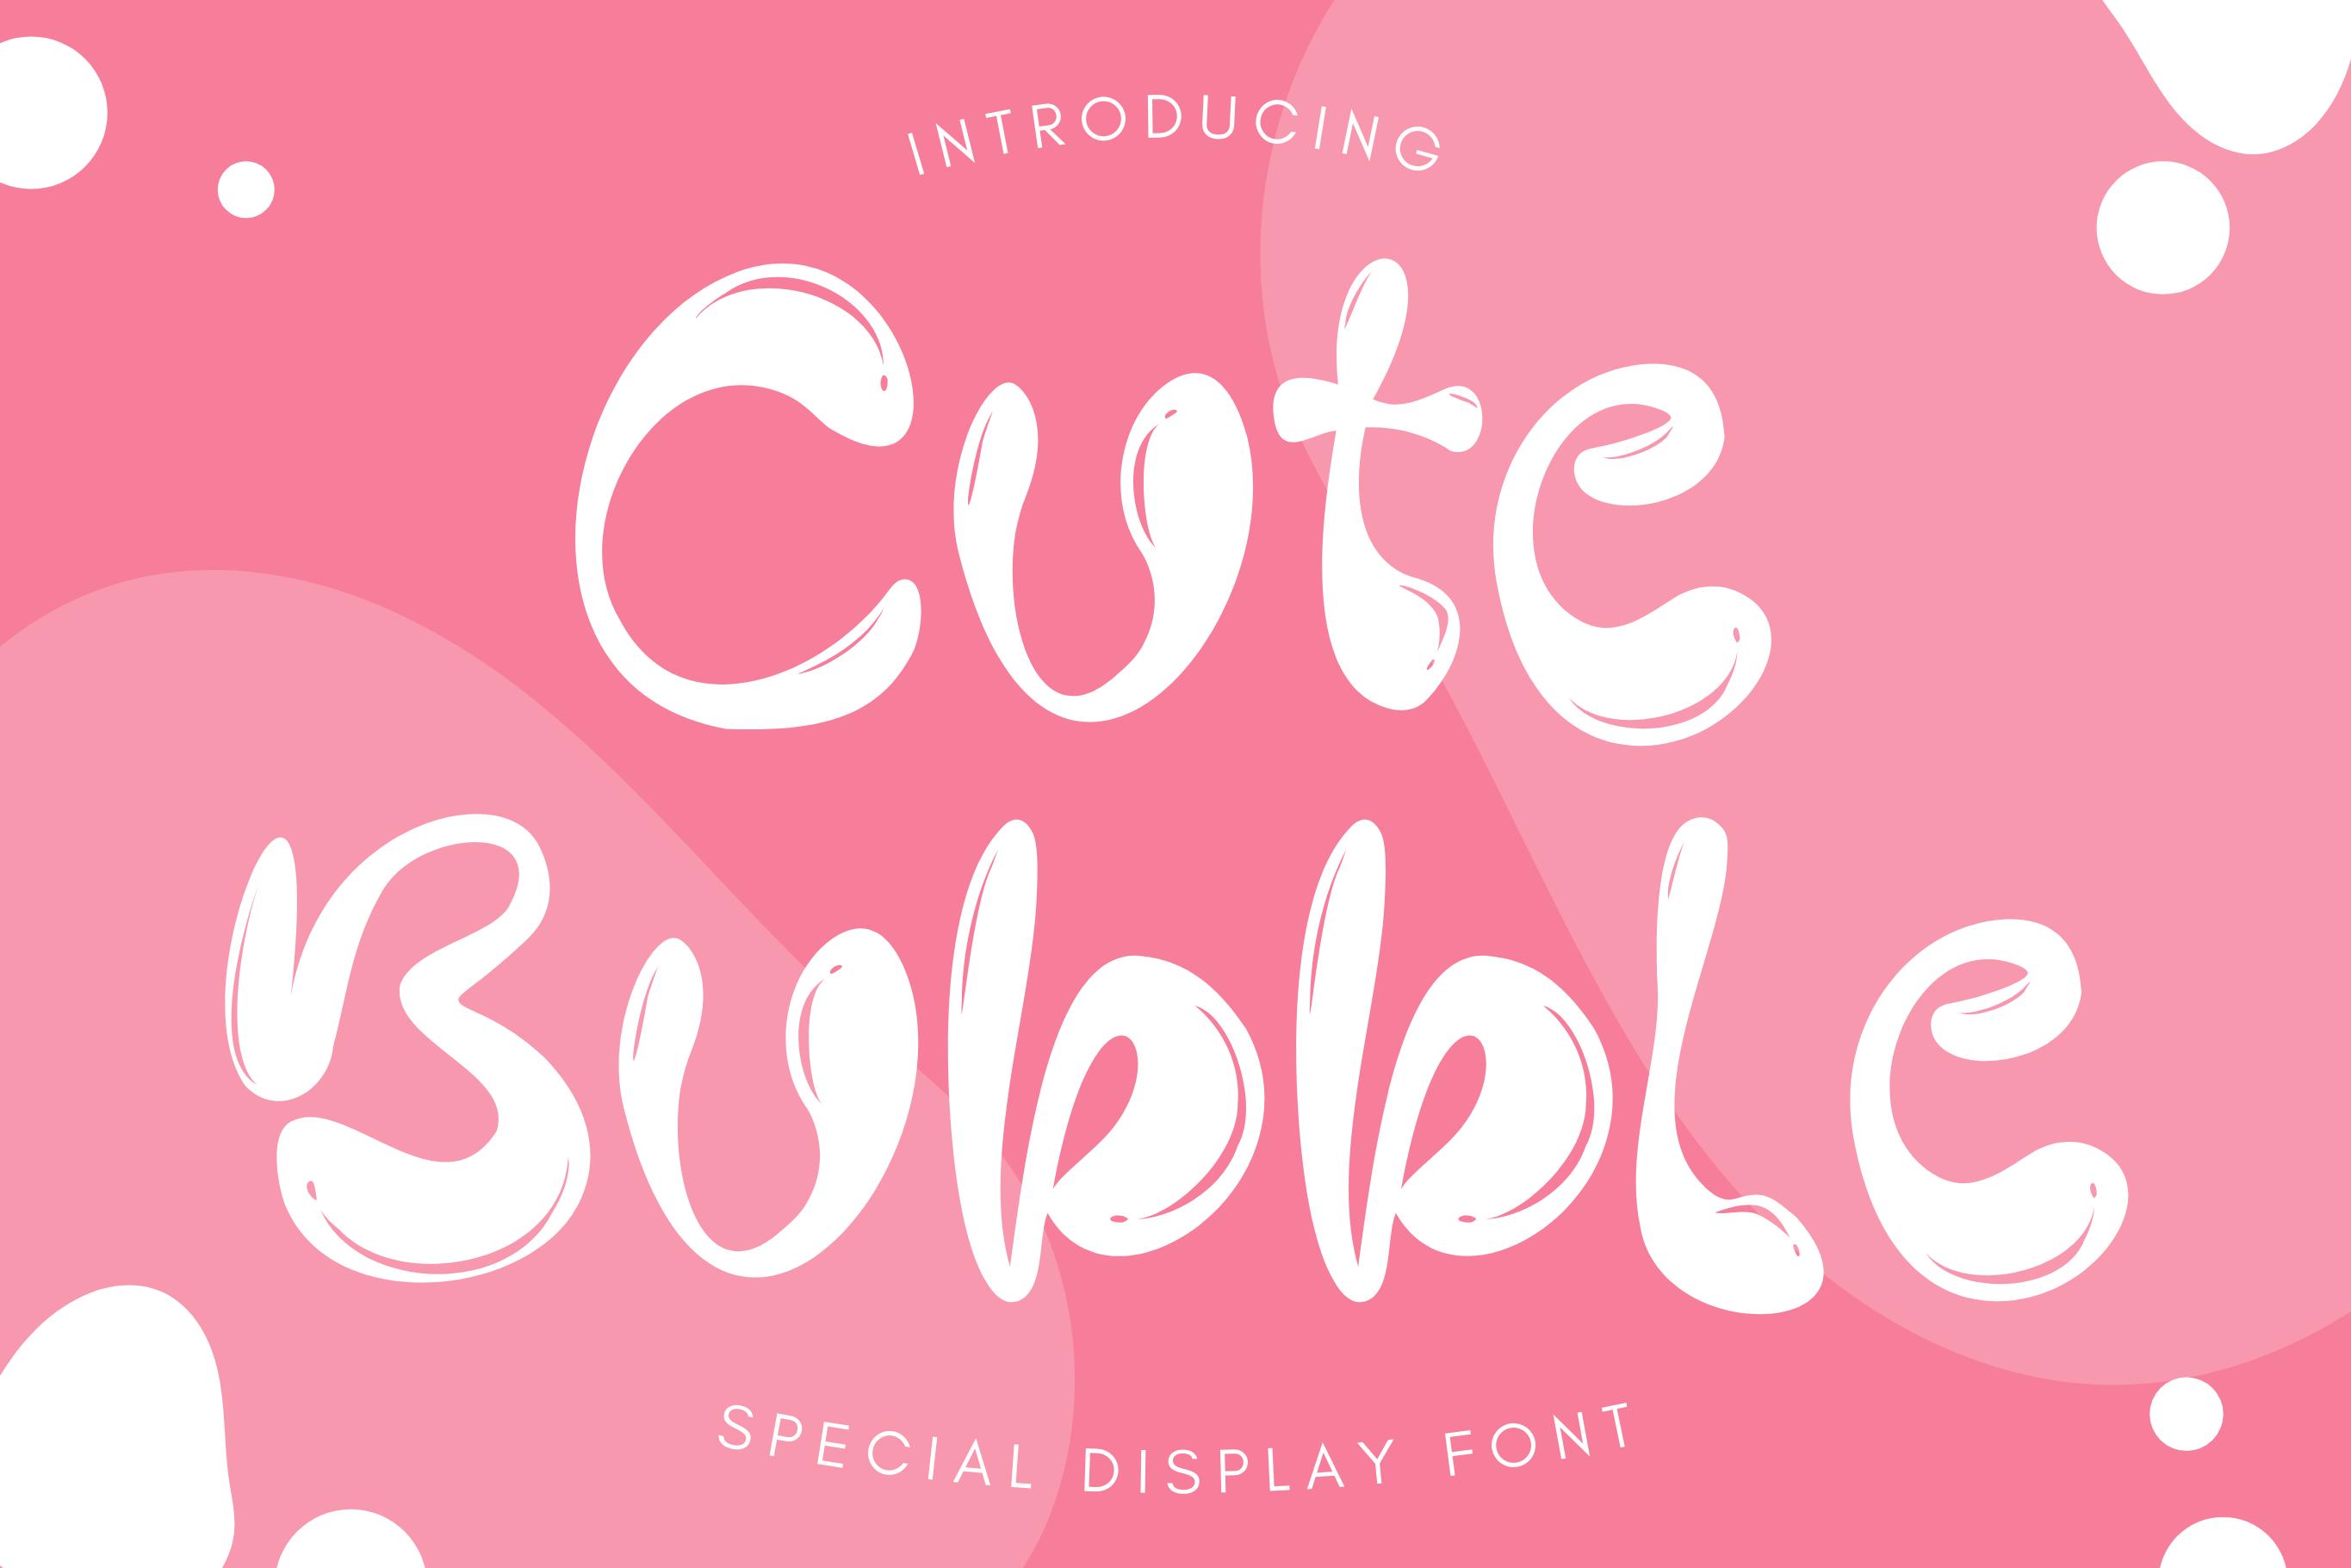 Cute Bubble Font